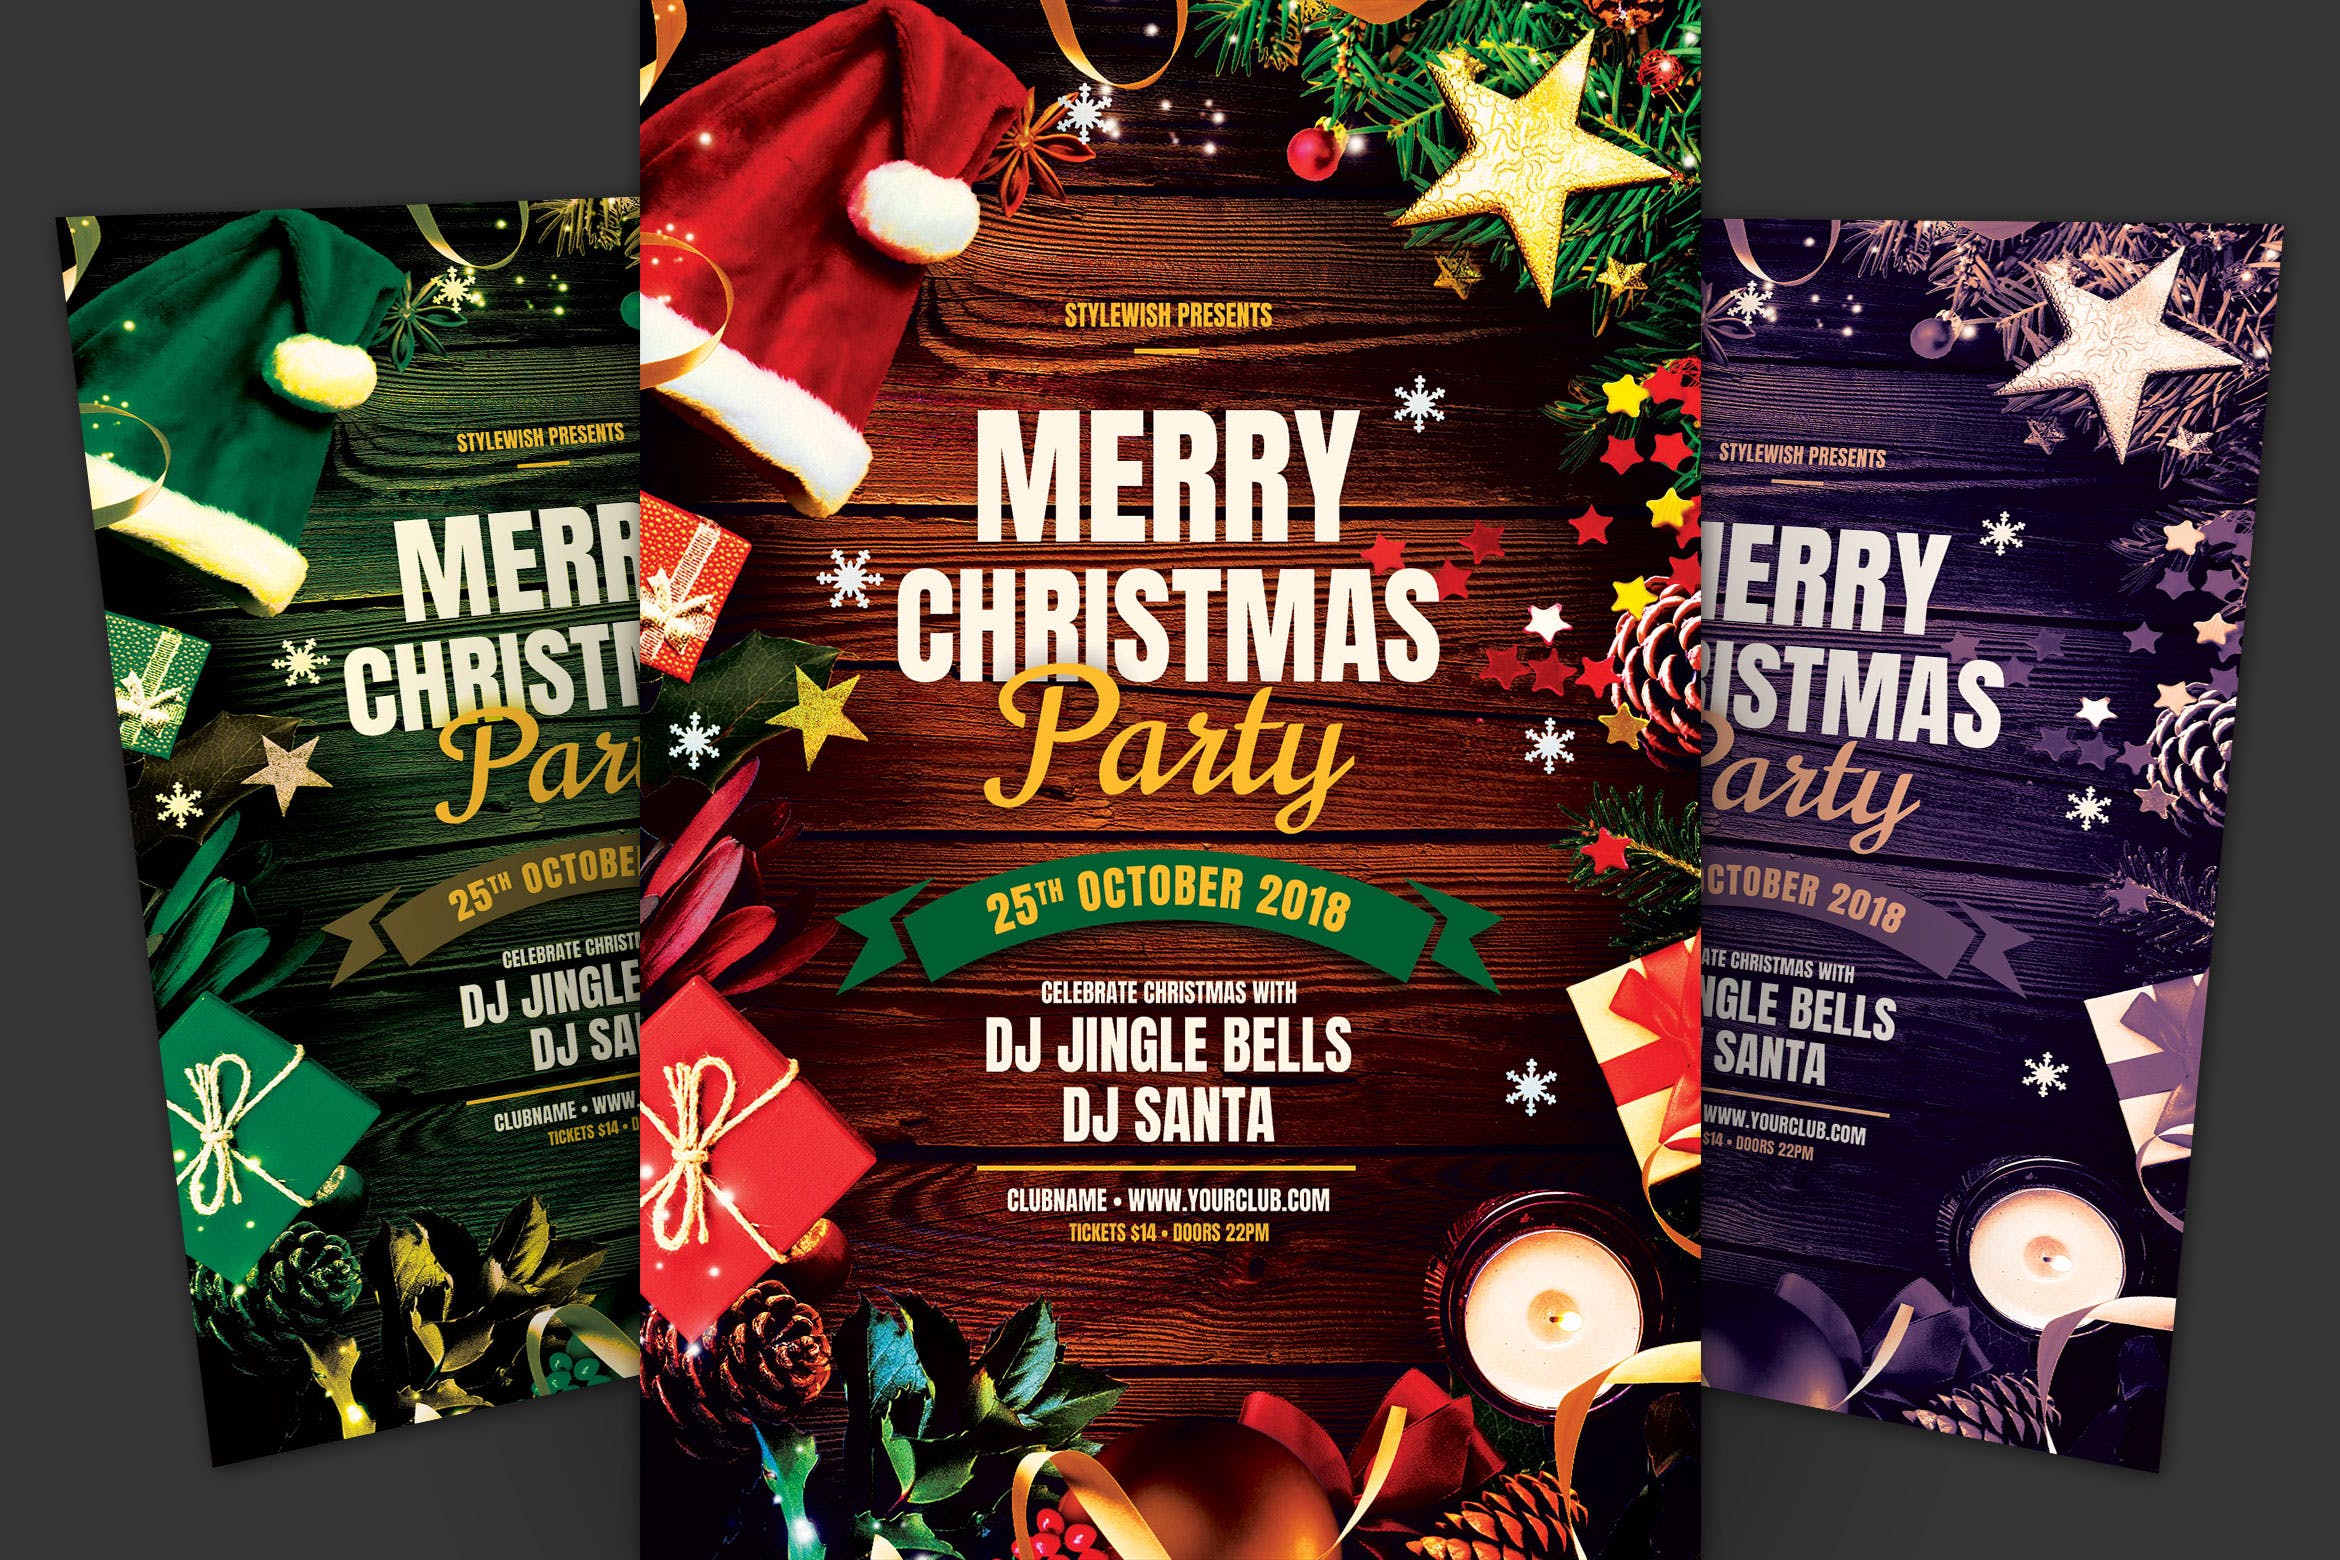 浓厚节日氛围圣诞节庆祝活动海报传单设计模板 Merry Christmas Party Flyer插图